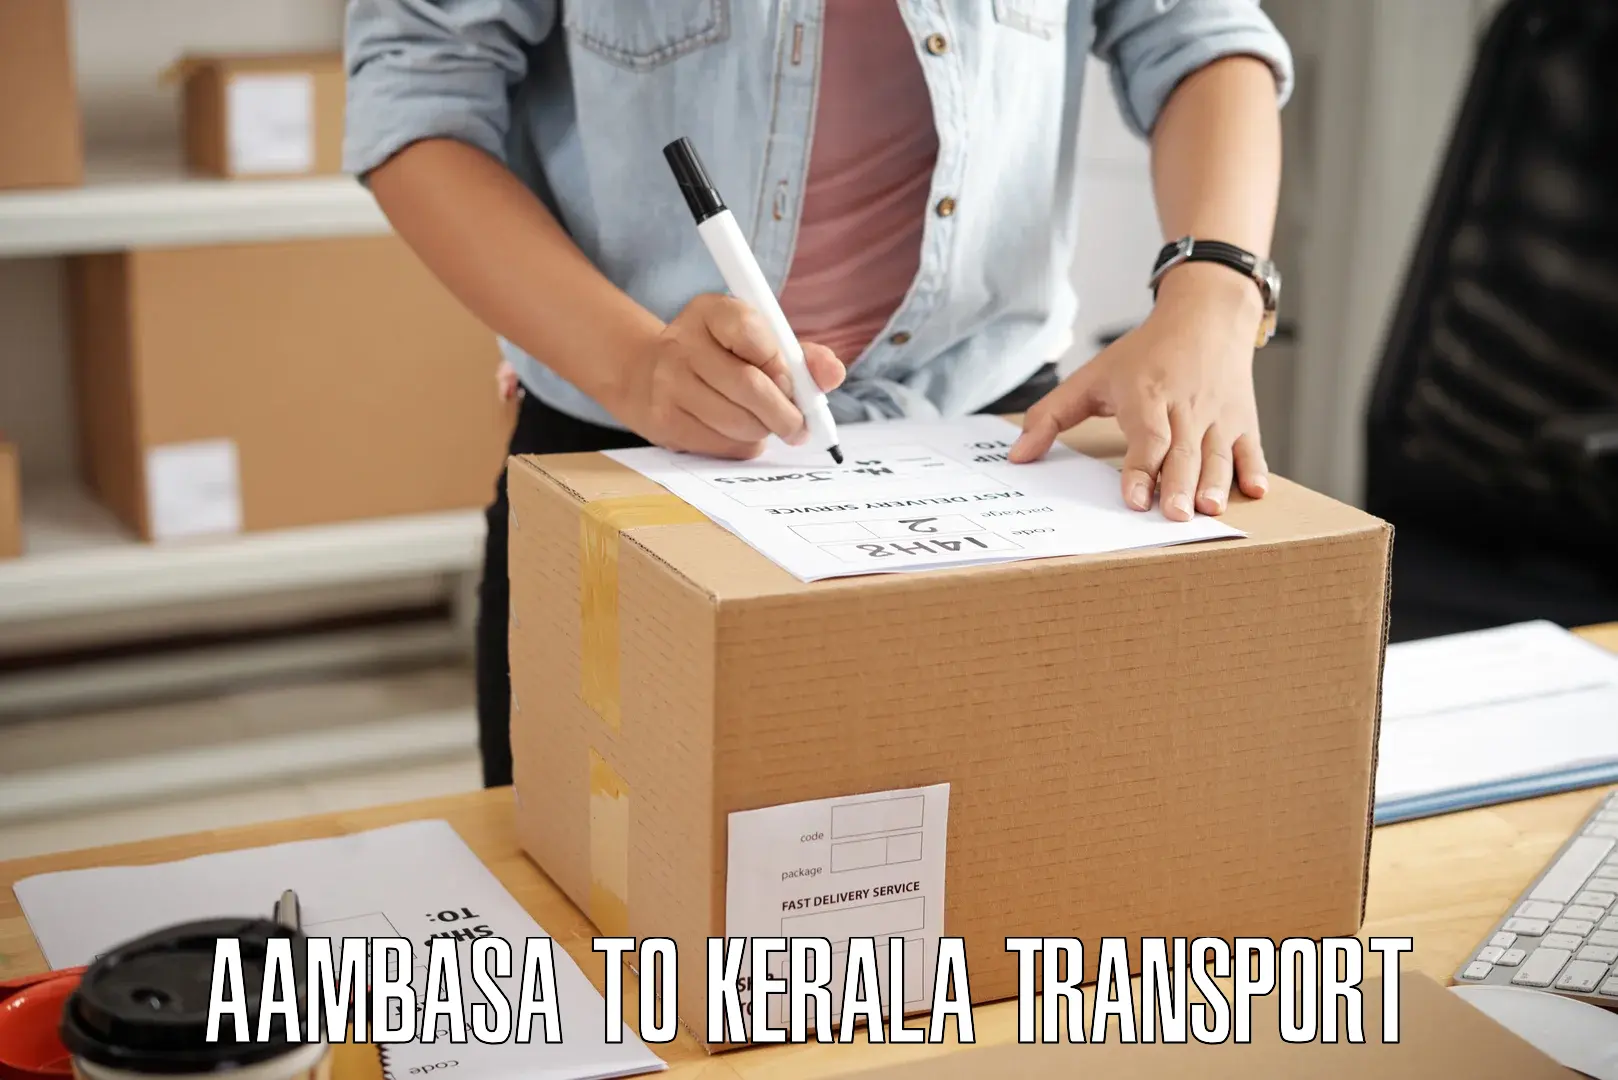 Shipping services in Aambasa to Kayamkulam